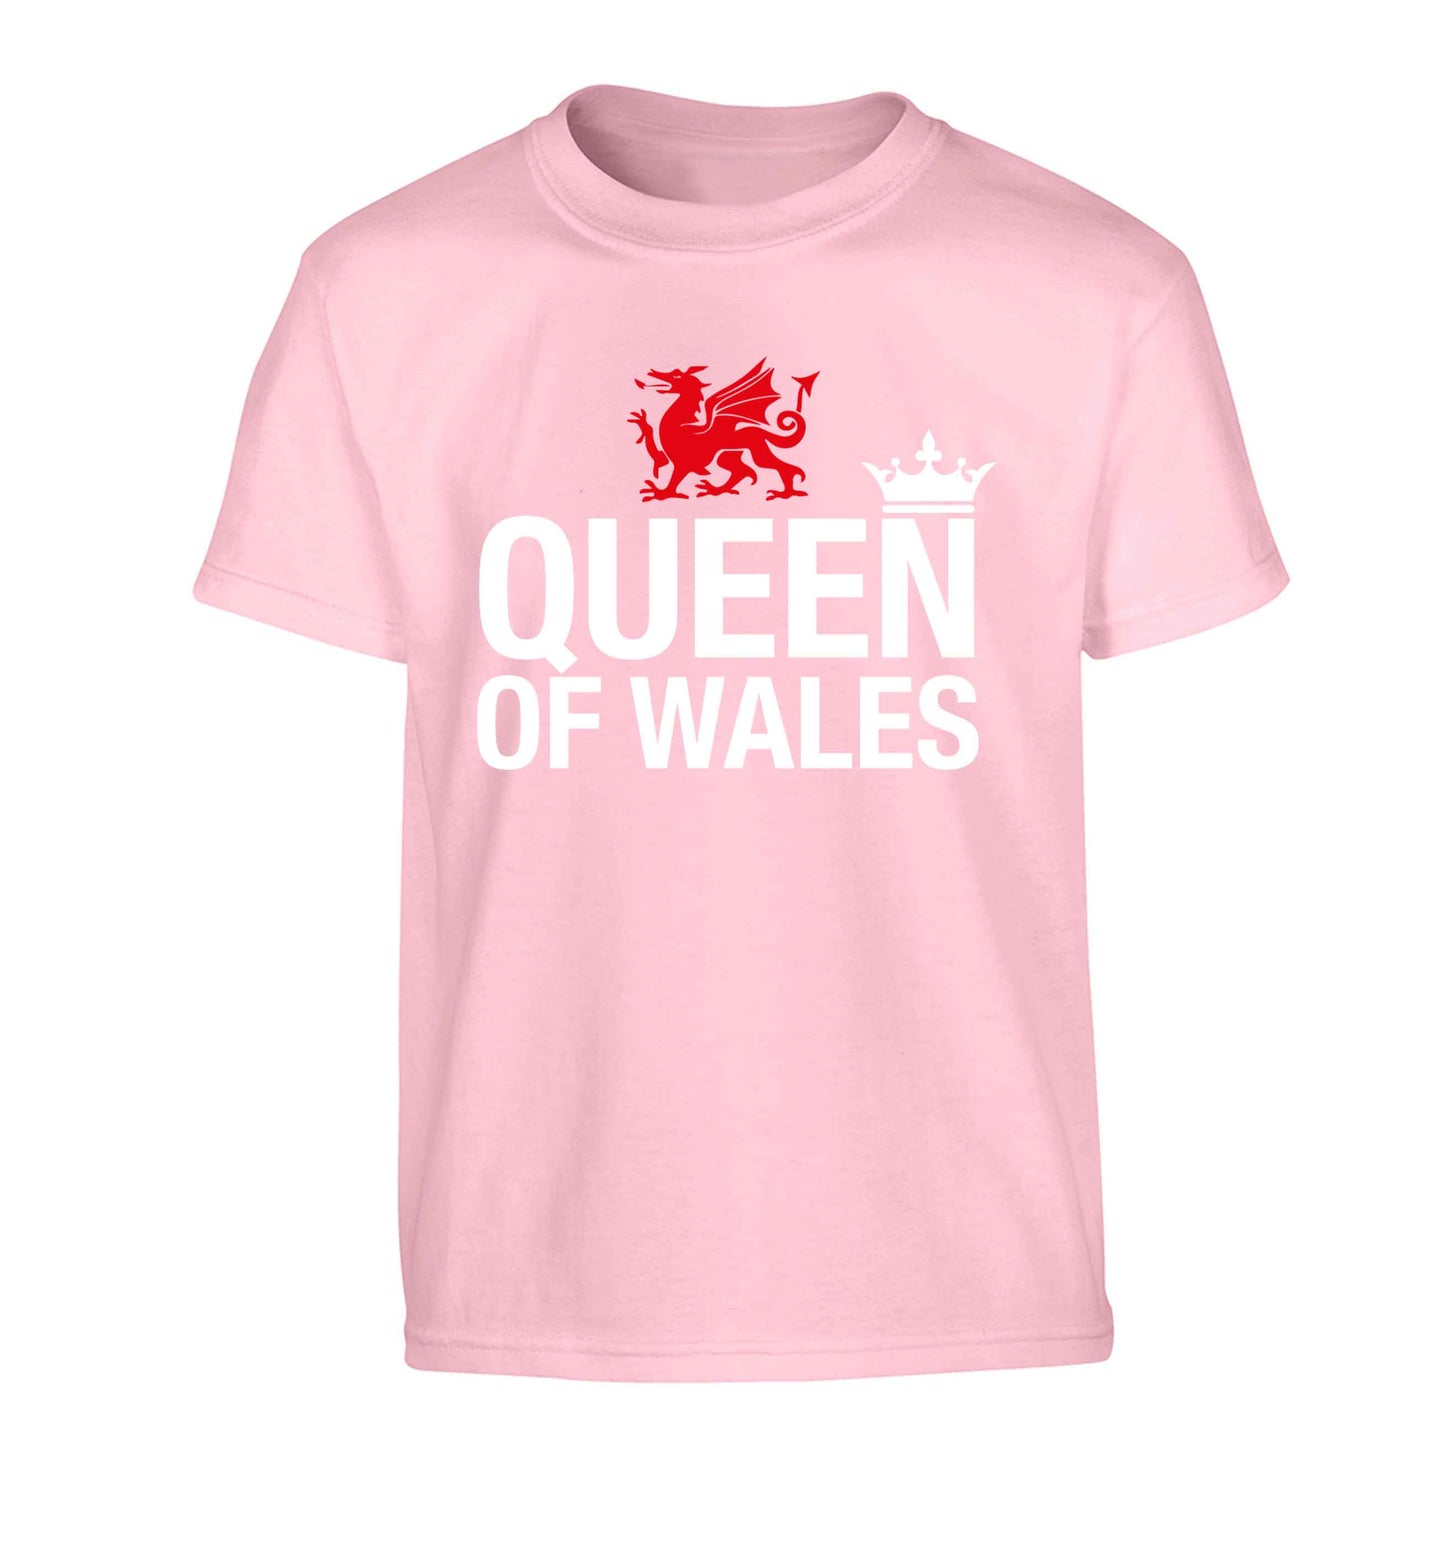 Queen of Wales Children's light pink Tshirt 12-13 Years